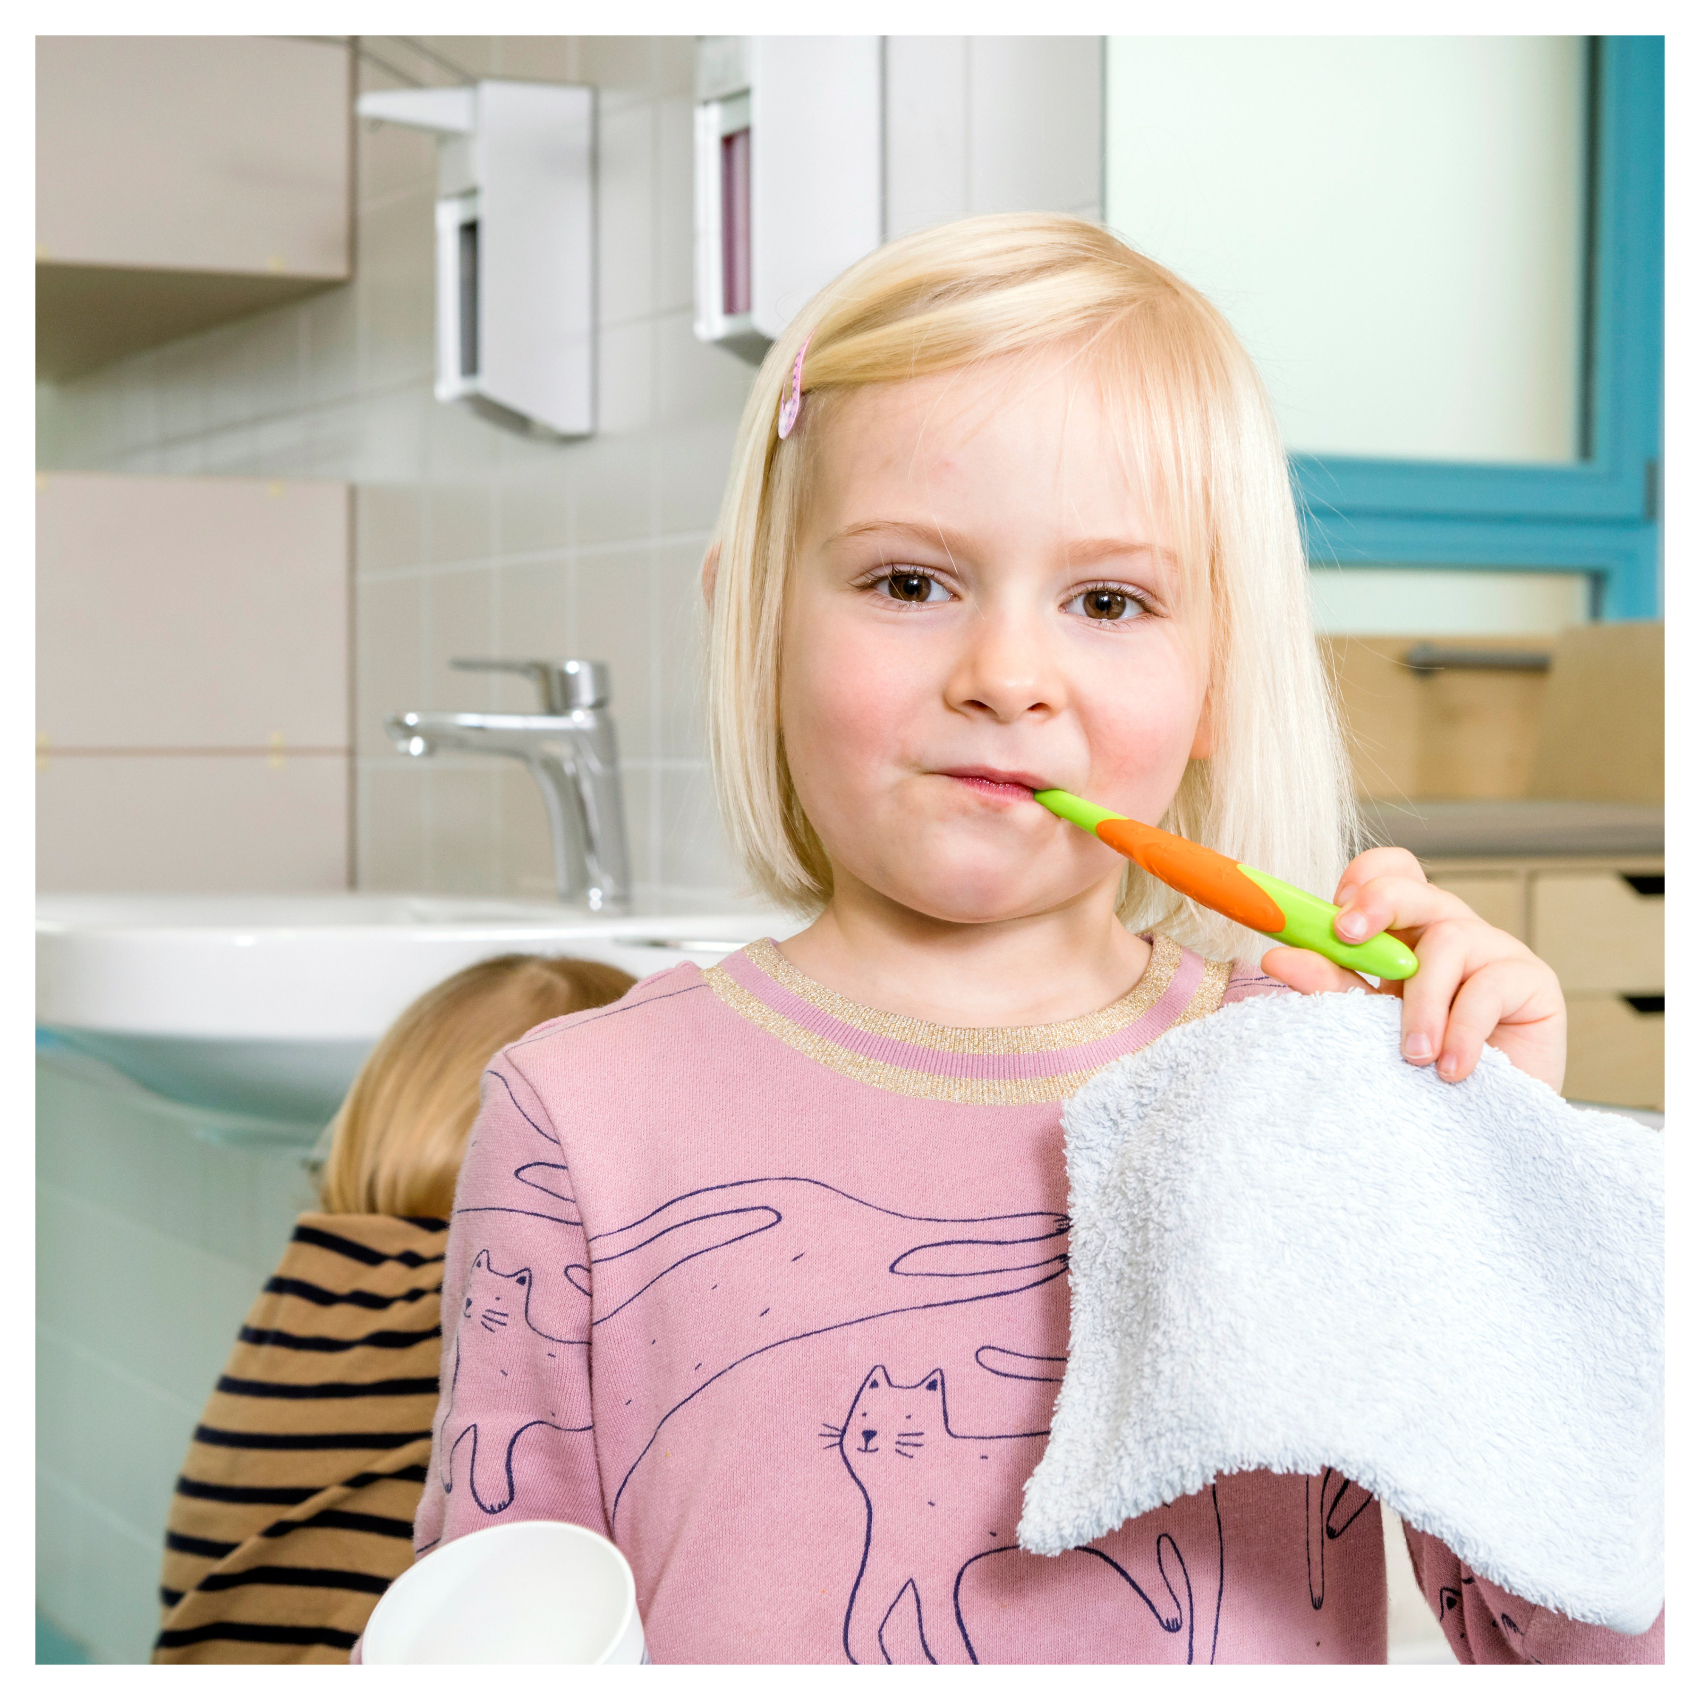 Kleines Mädchen putzt sich die Zähne